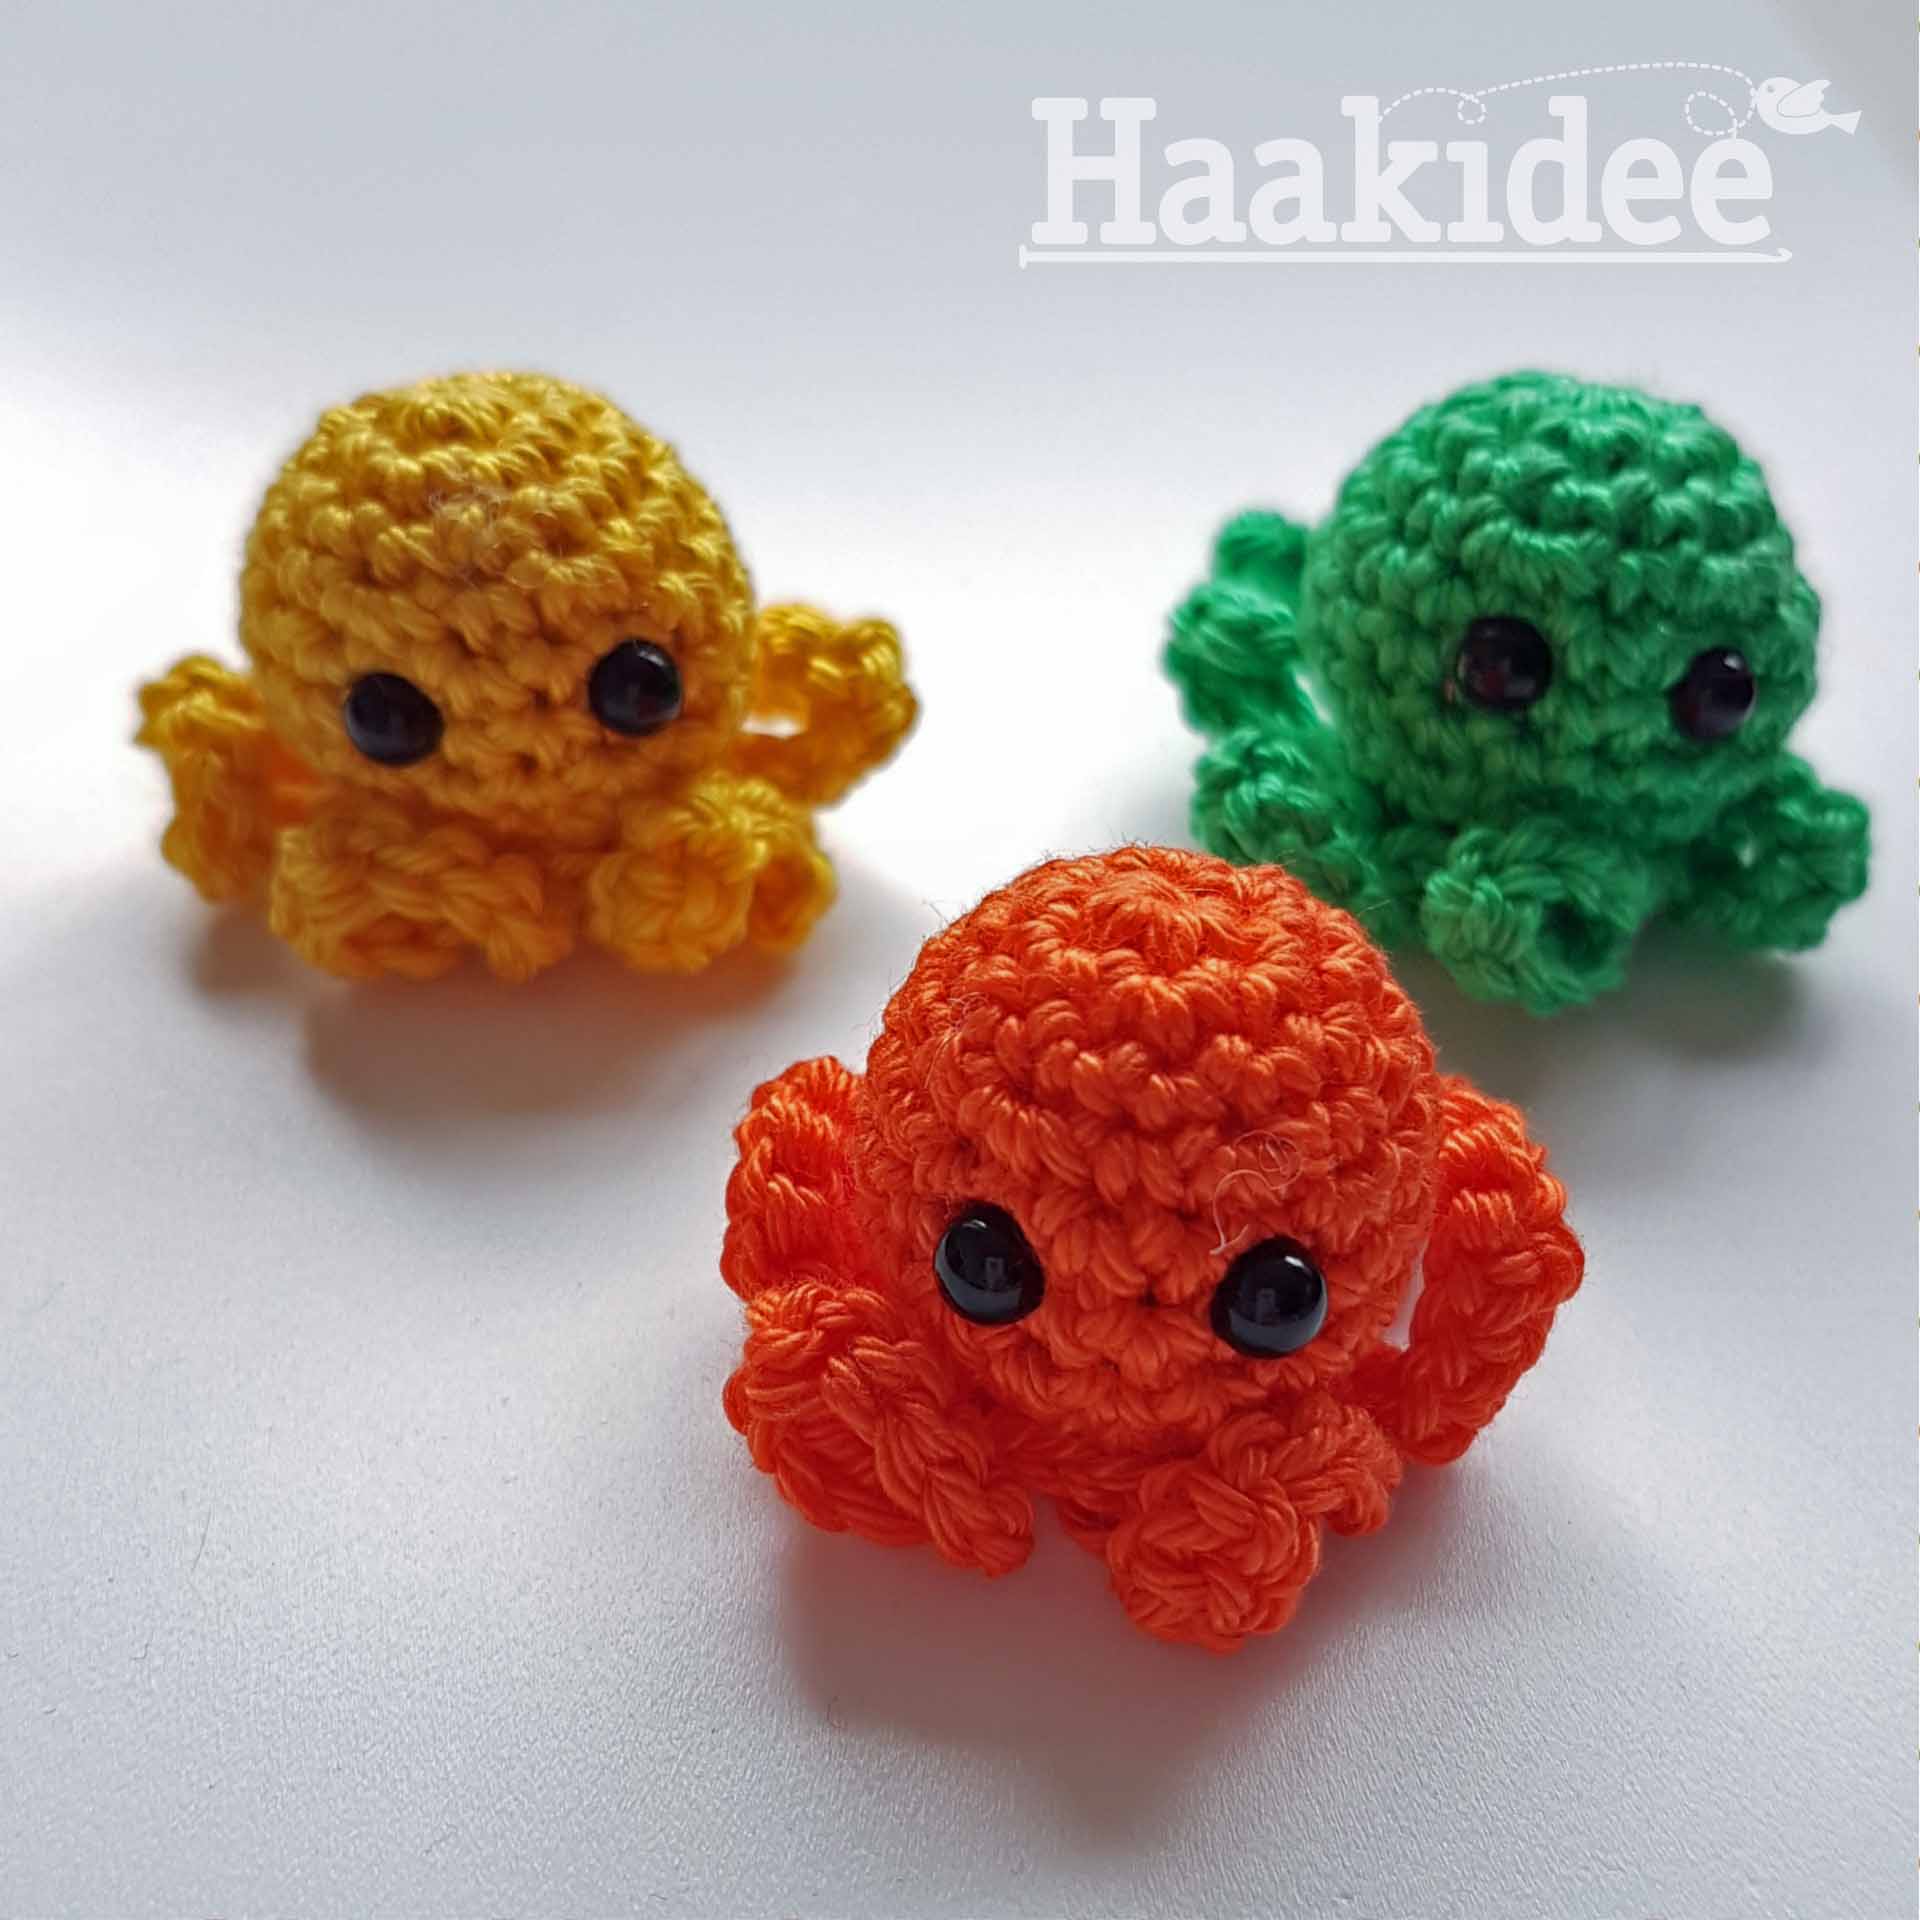 Stralend Vervormen Decoratie Gratis Haakpatroon Mini-Octopusjes - Haakidee